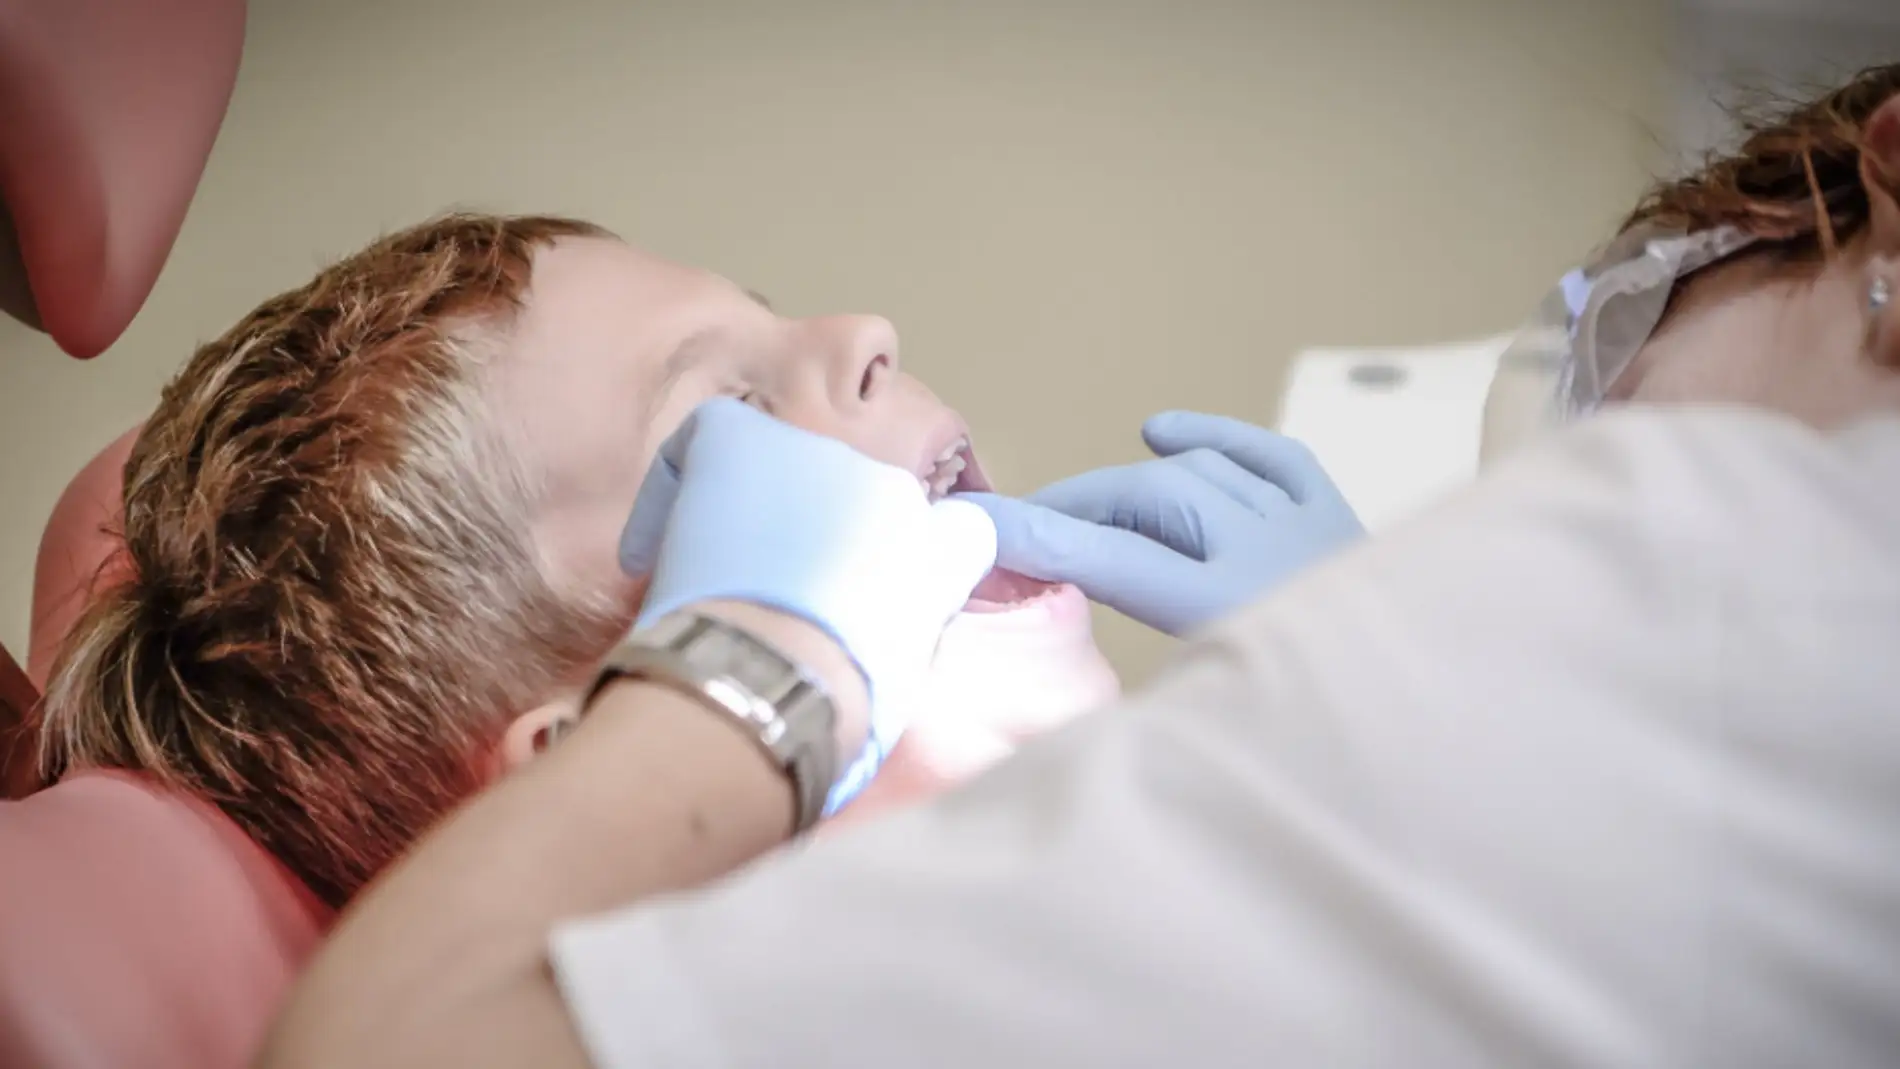 Solo el 71% de los padres ha llevado a su hijo al dentista en el último año